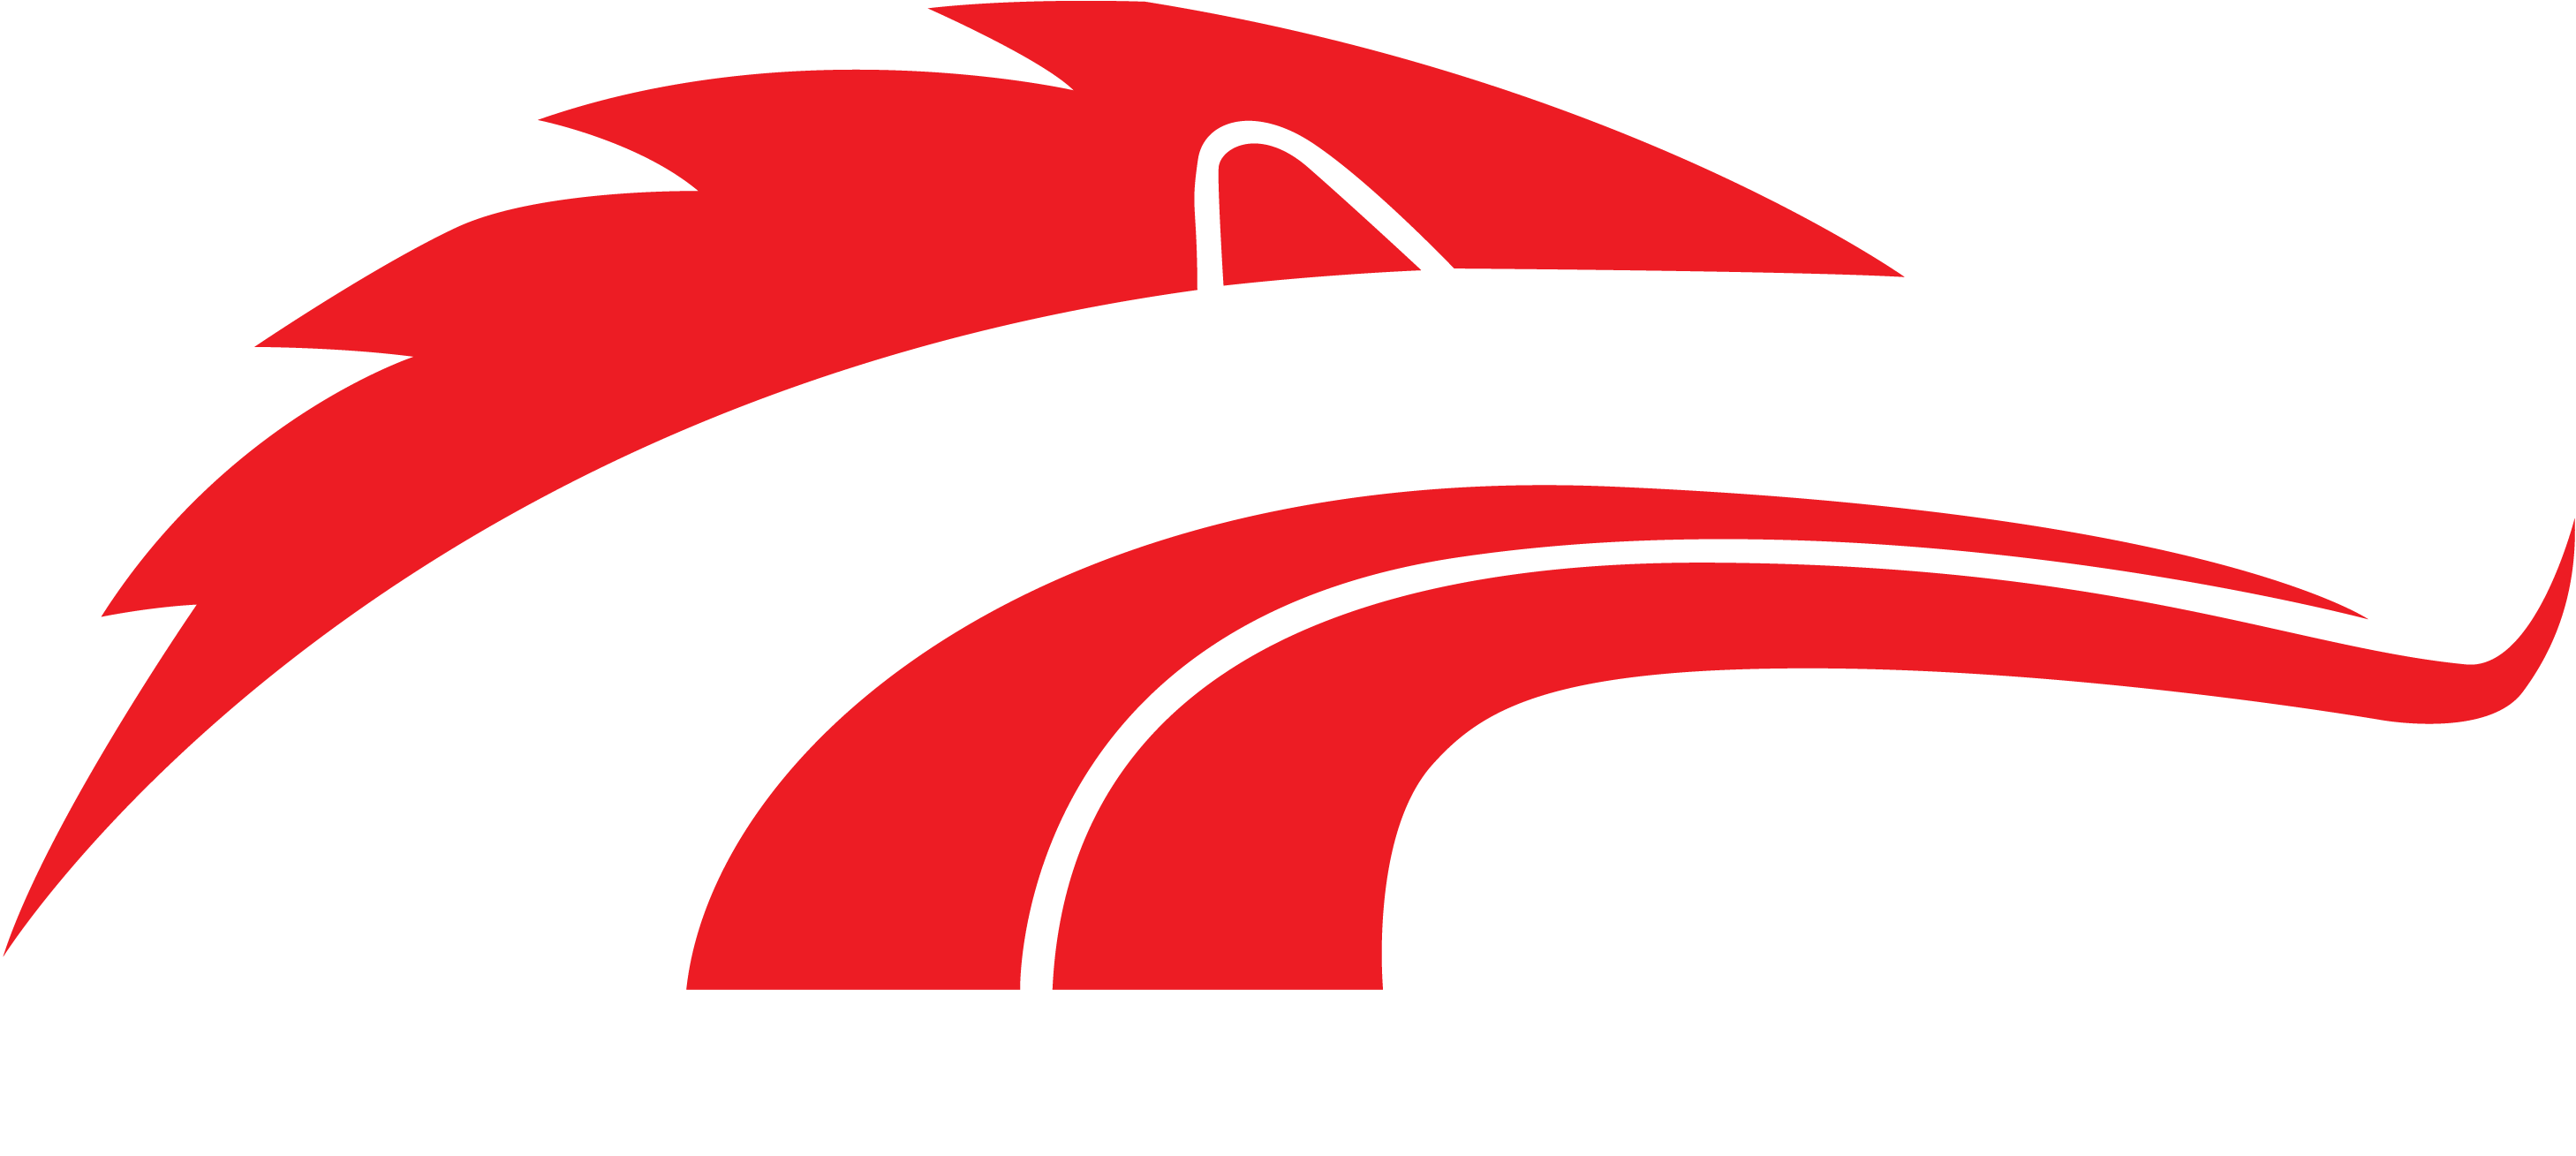 Gateway Classic Mustang - Gateway Classic Mustang (2940x1354)